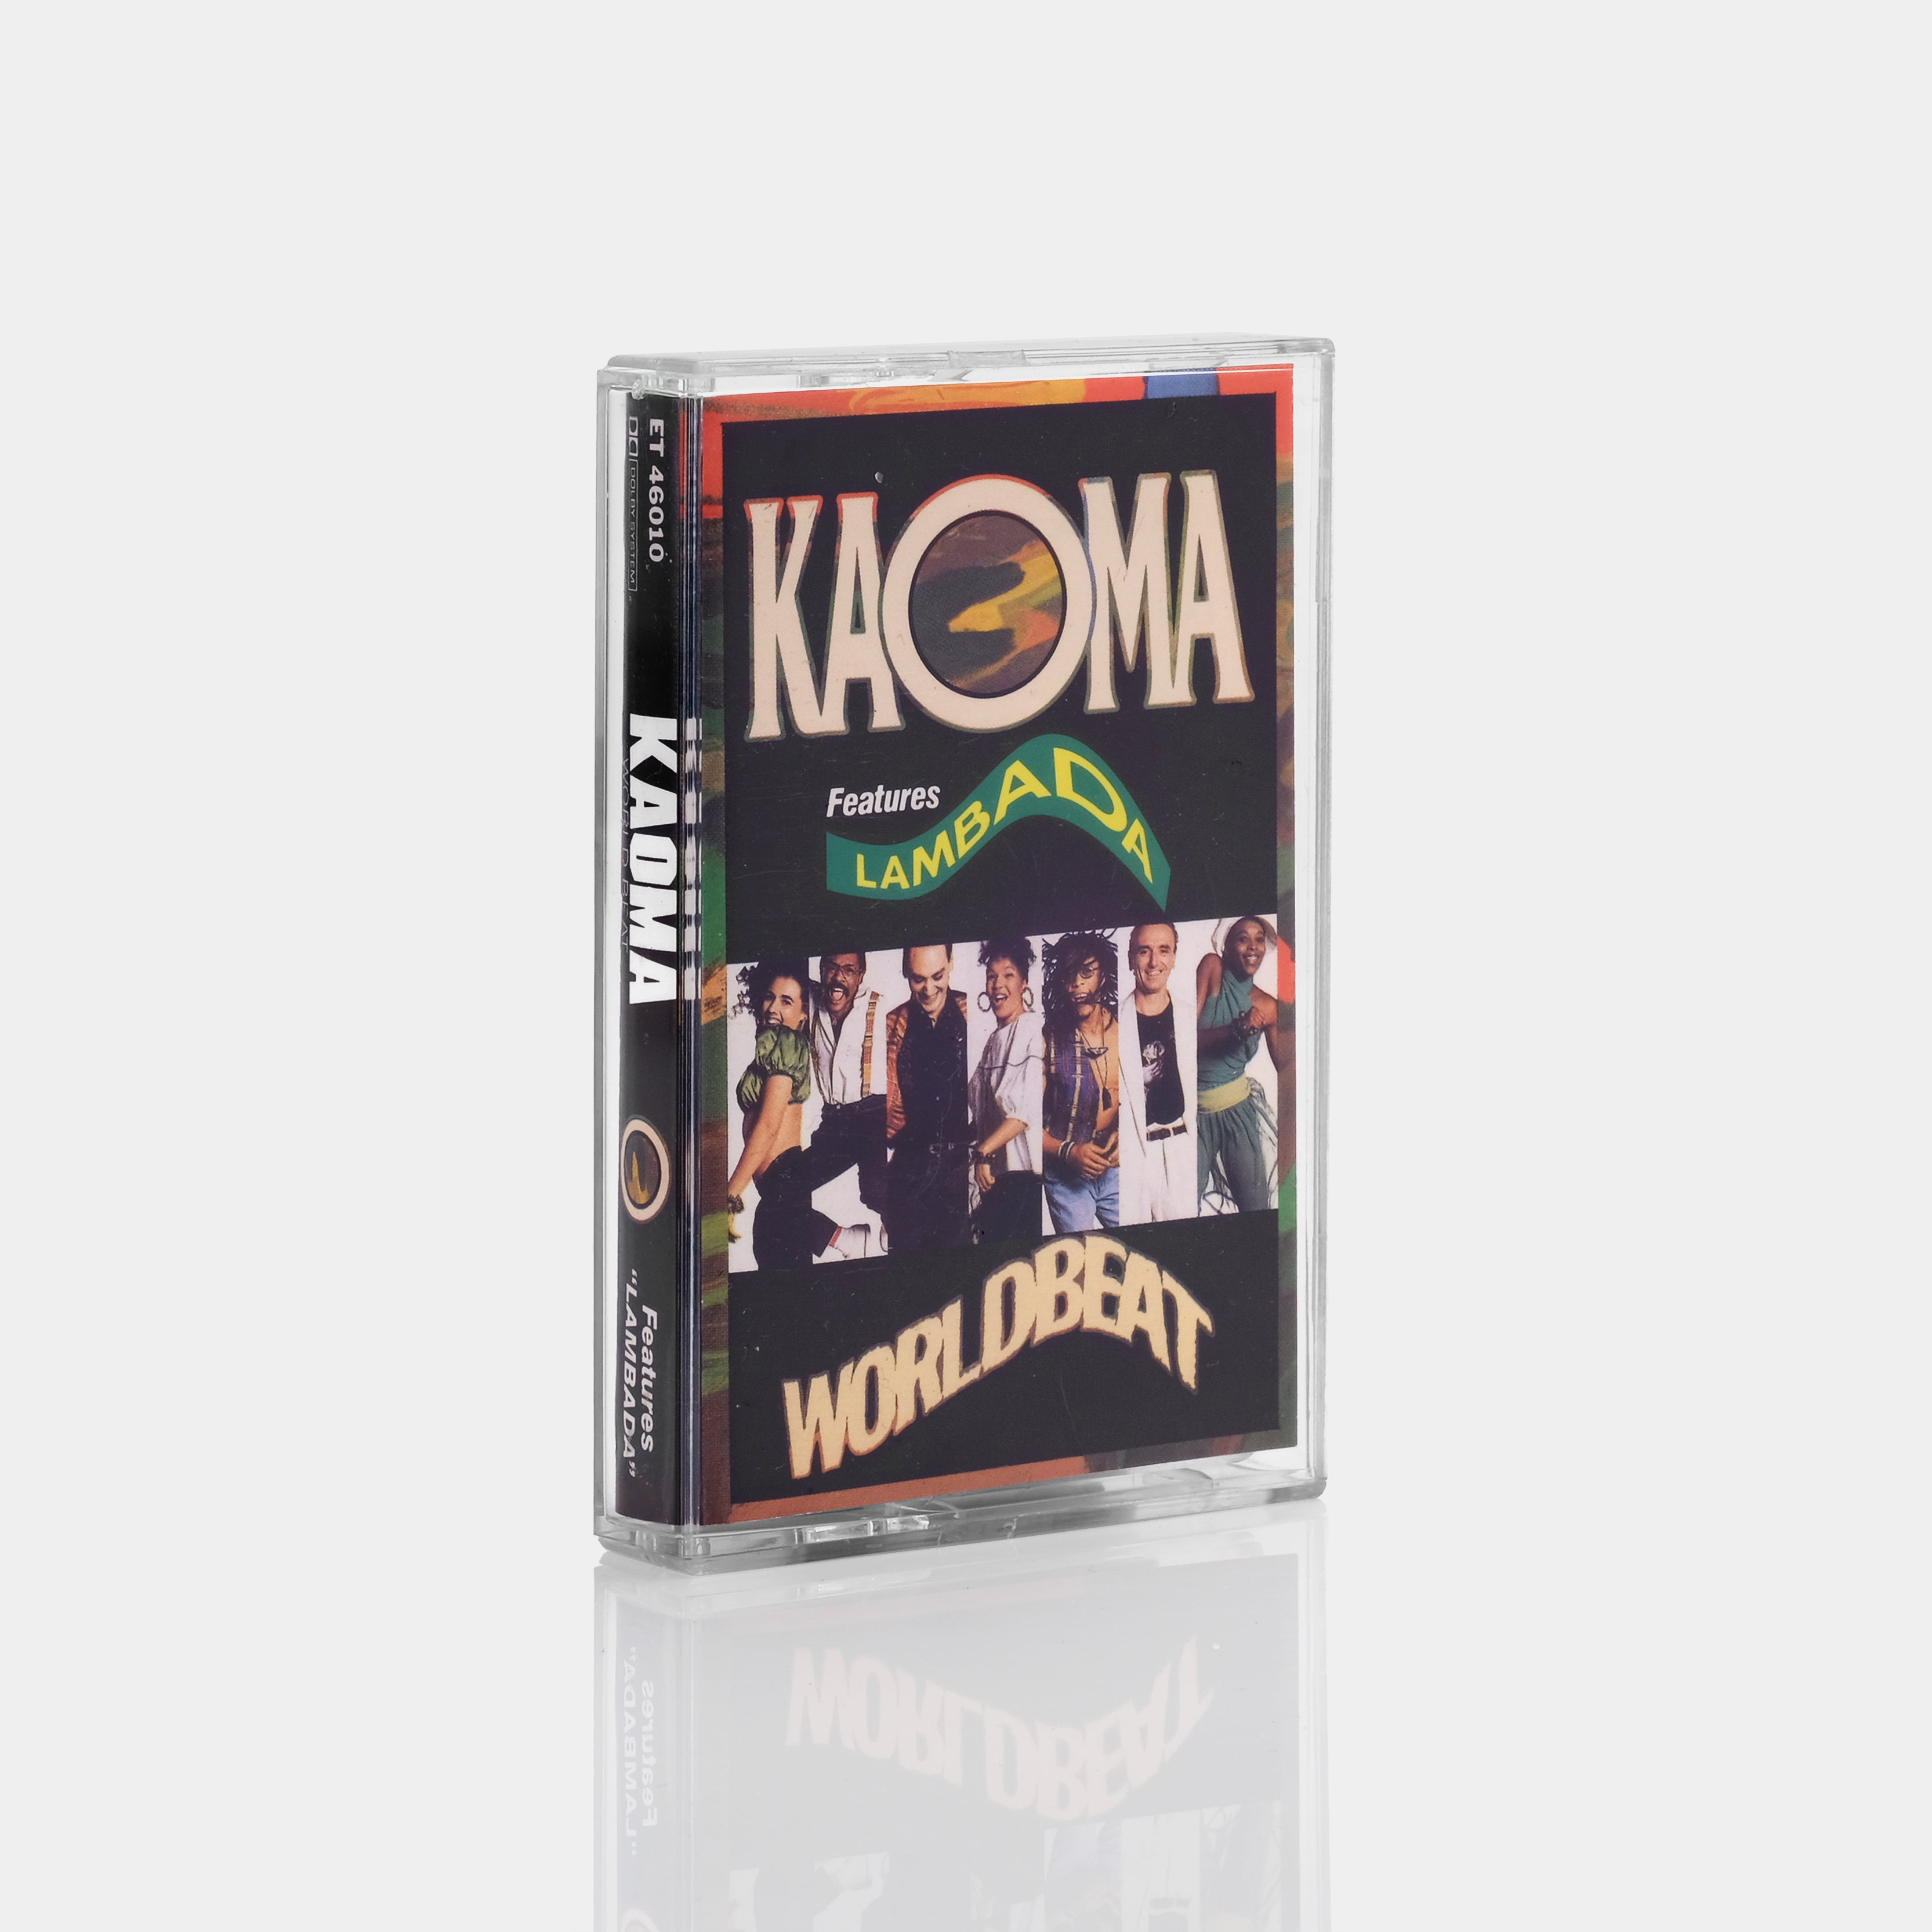 Kaoma - Worldbeat Cassette Tape